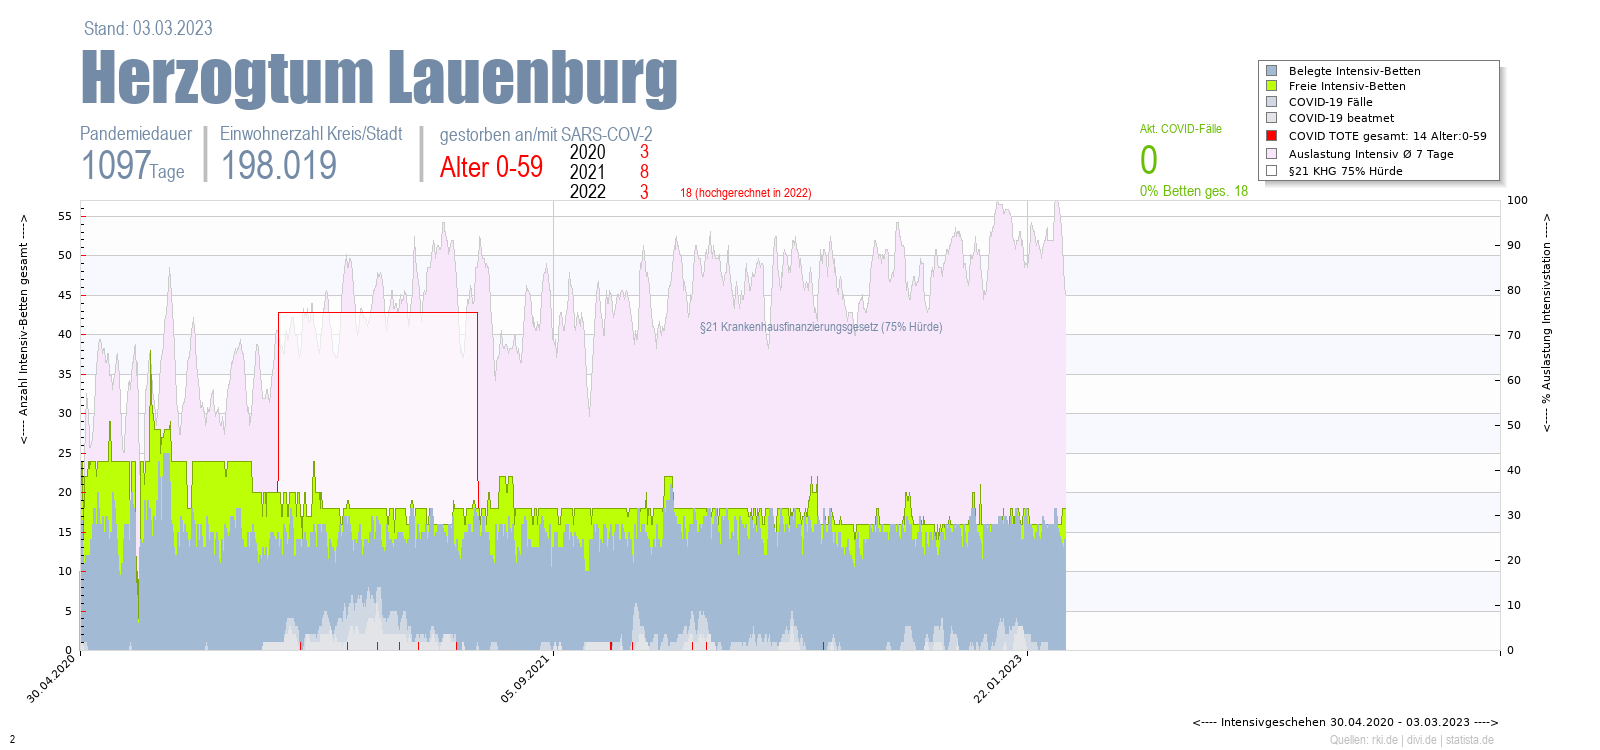 Intensivstation Auslastung Herzogtum Lauenburg Alter 0-59